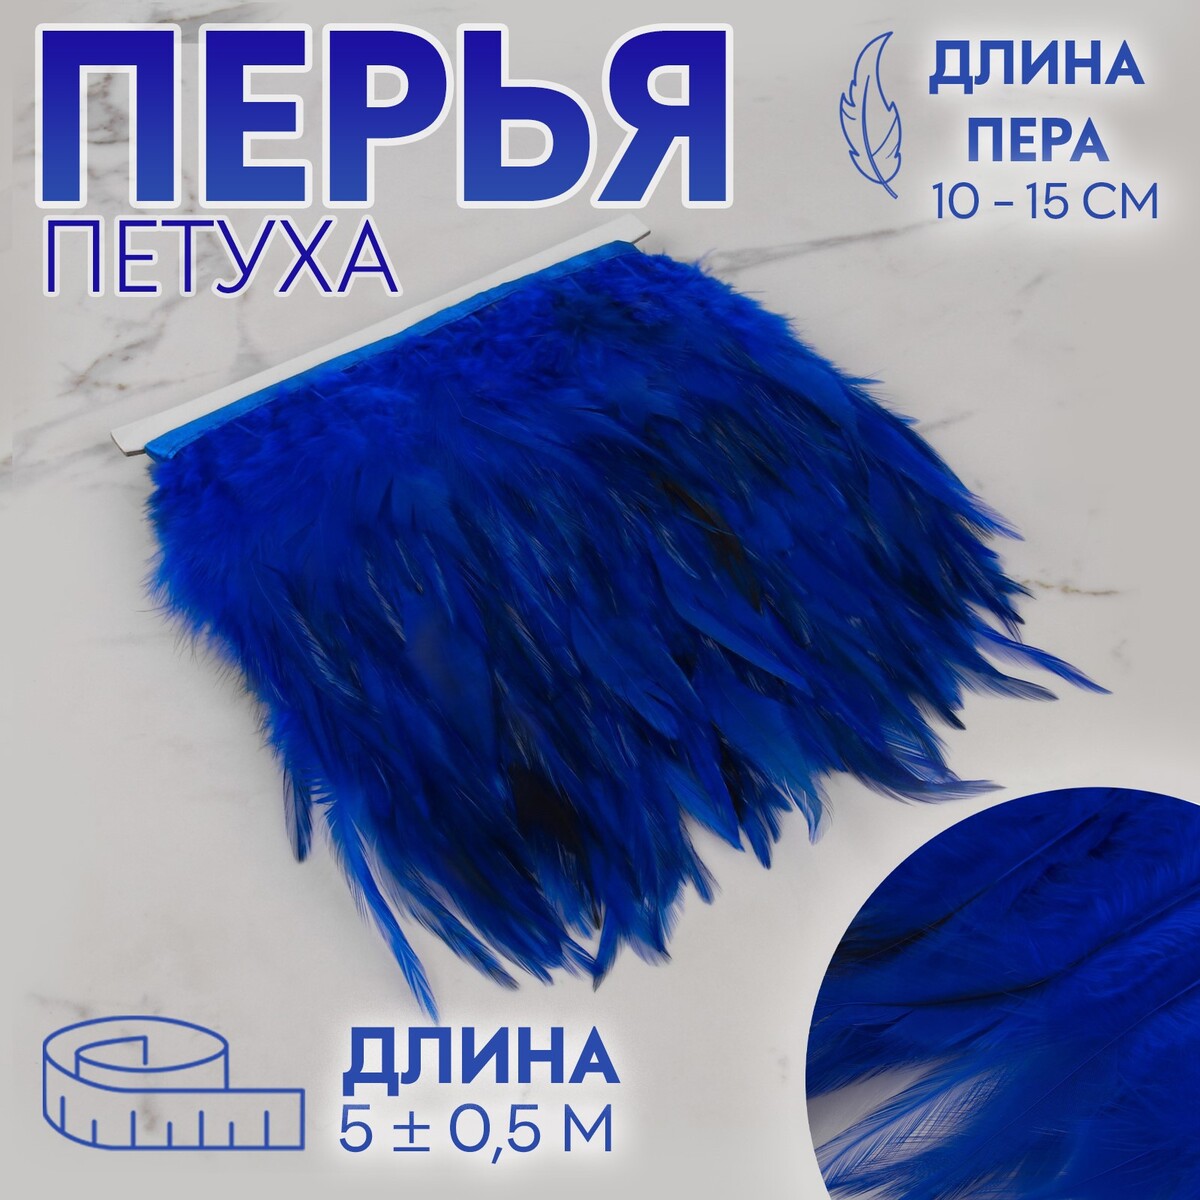 Тесьма с перьями петуха, 10-15 см, 5 ± 0,5 м, цвет синий тесьма с перьями индюка 13 17 см 5 ± 0 5 м сливочный